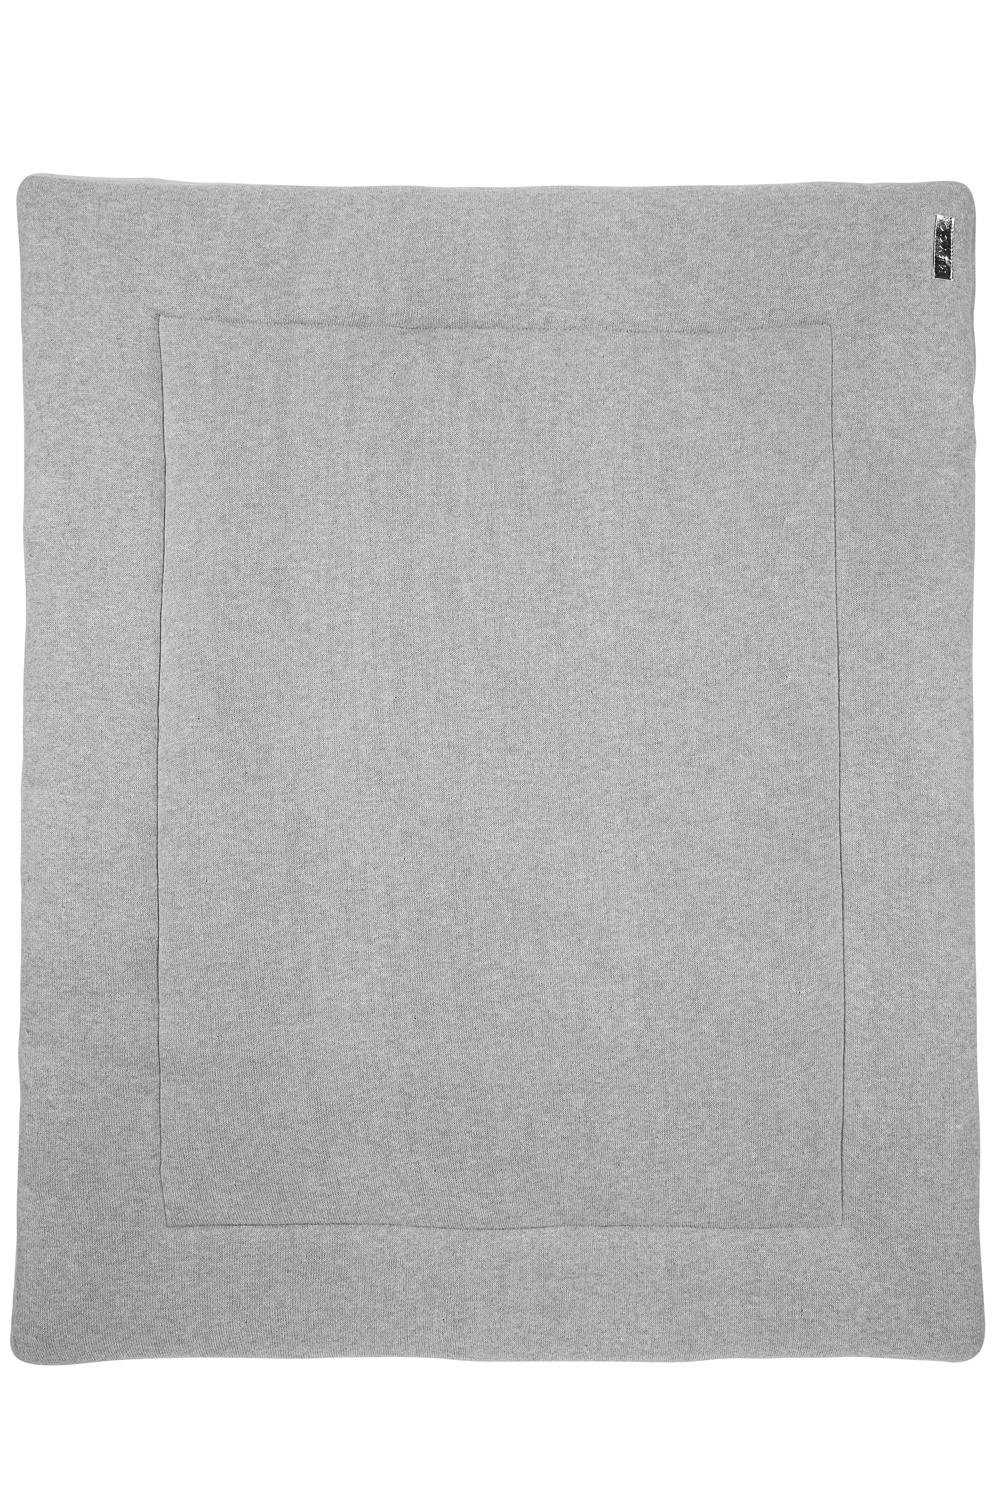 Playpen mattress Knit Basic velvet - grey melange - 77x97cm